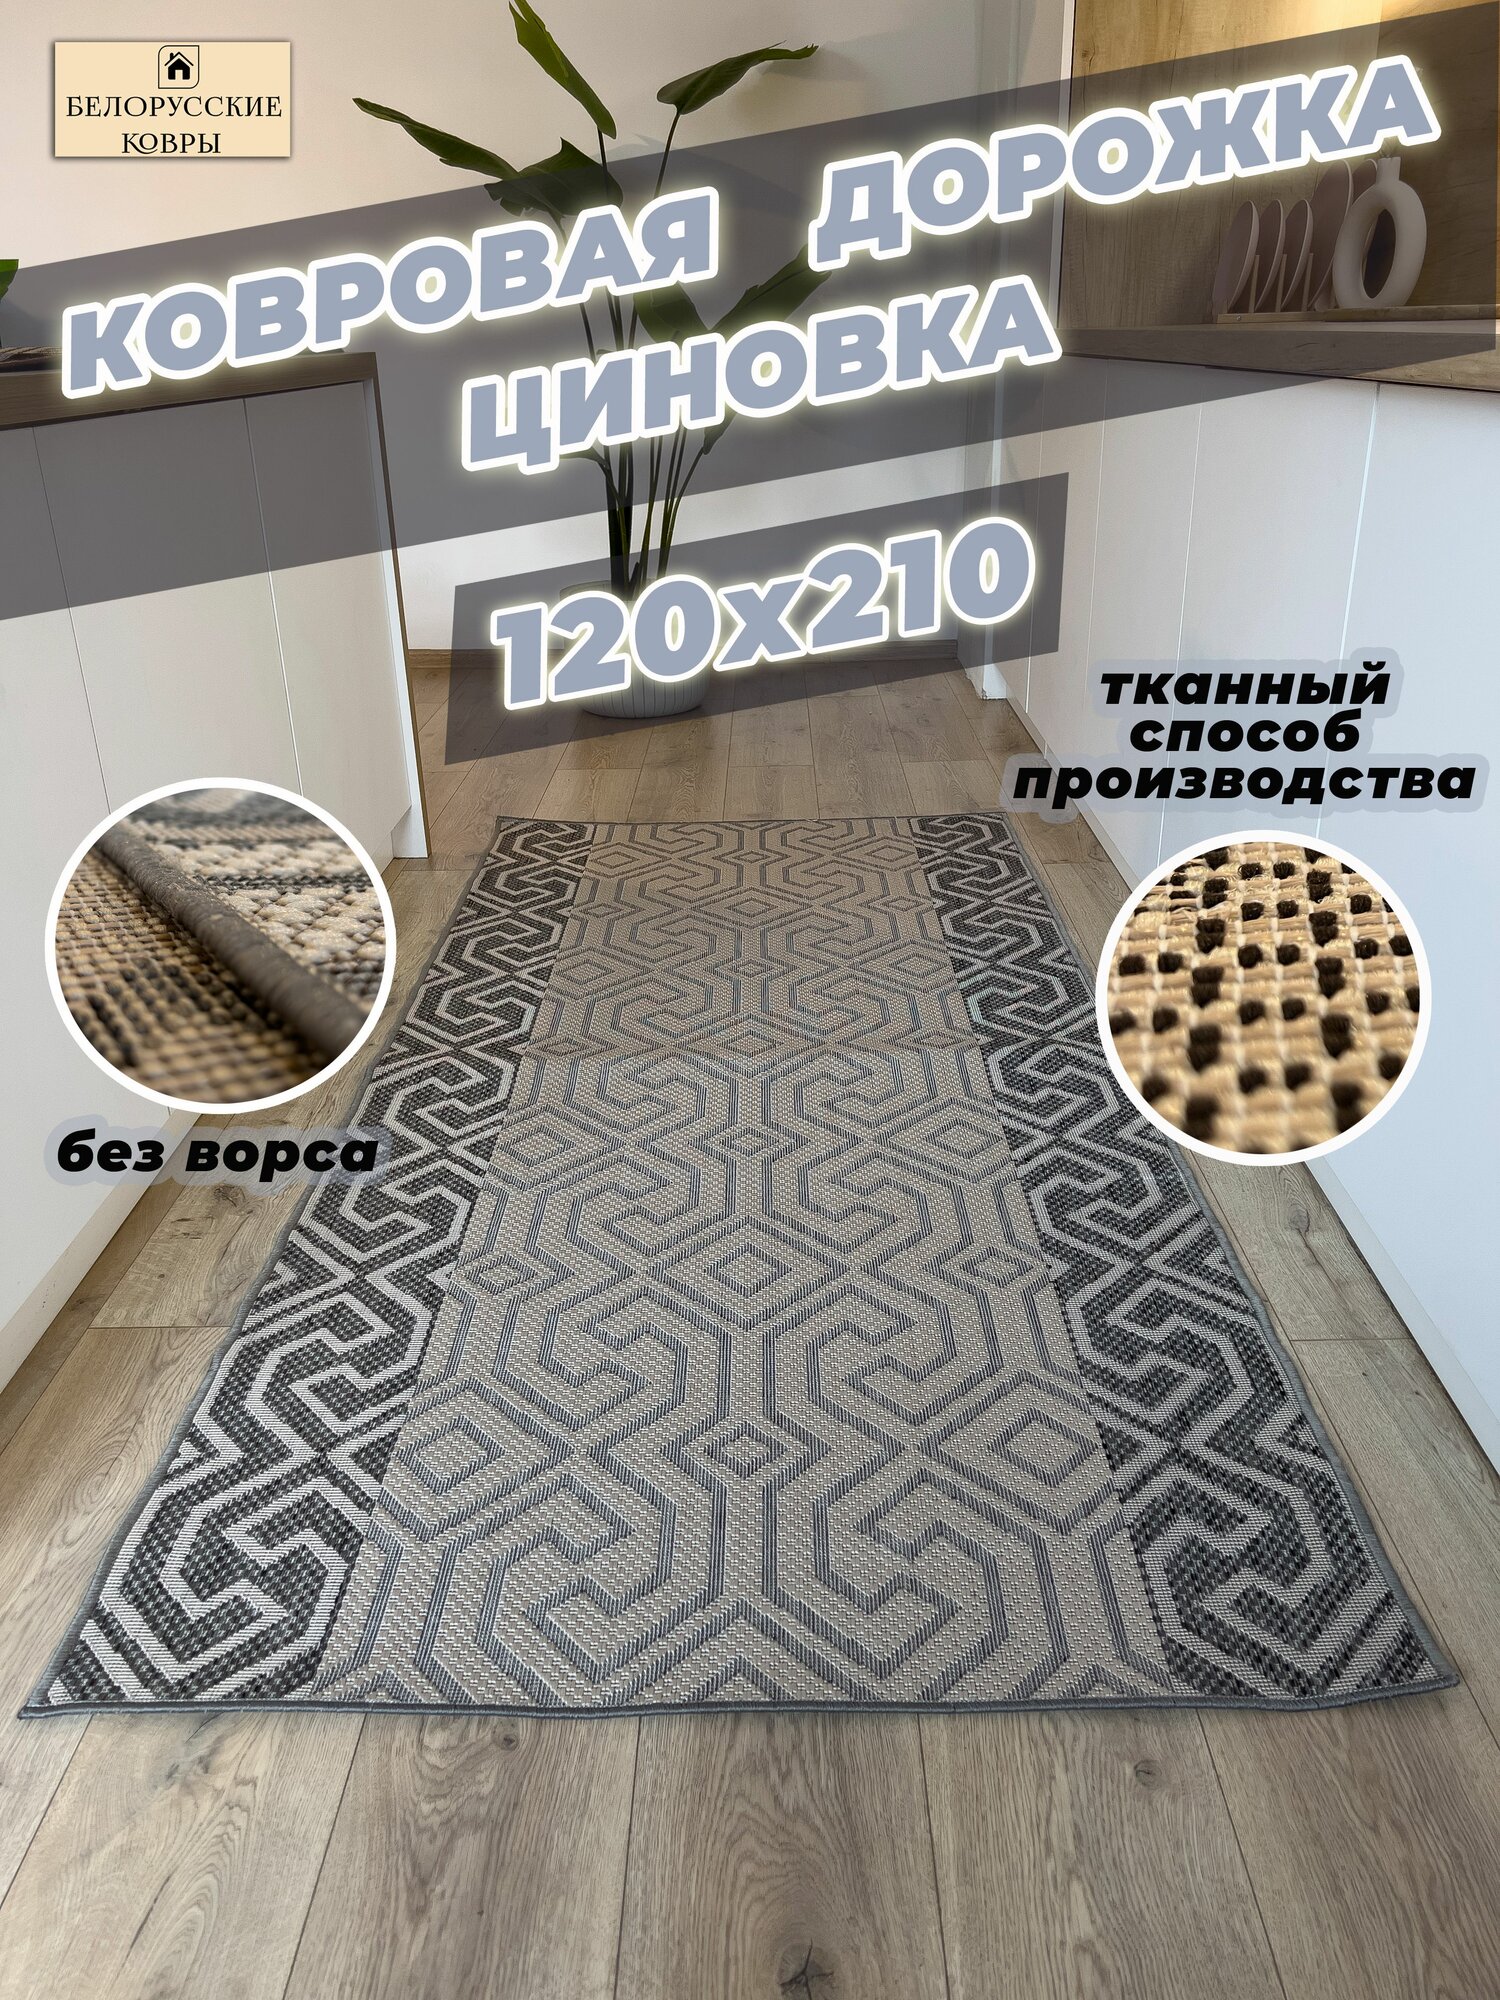 Белорусские ковры, ковровая дорожка циновка 120х210см./1,2х2,1м.